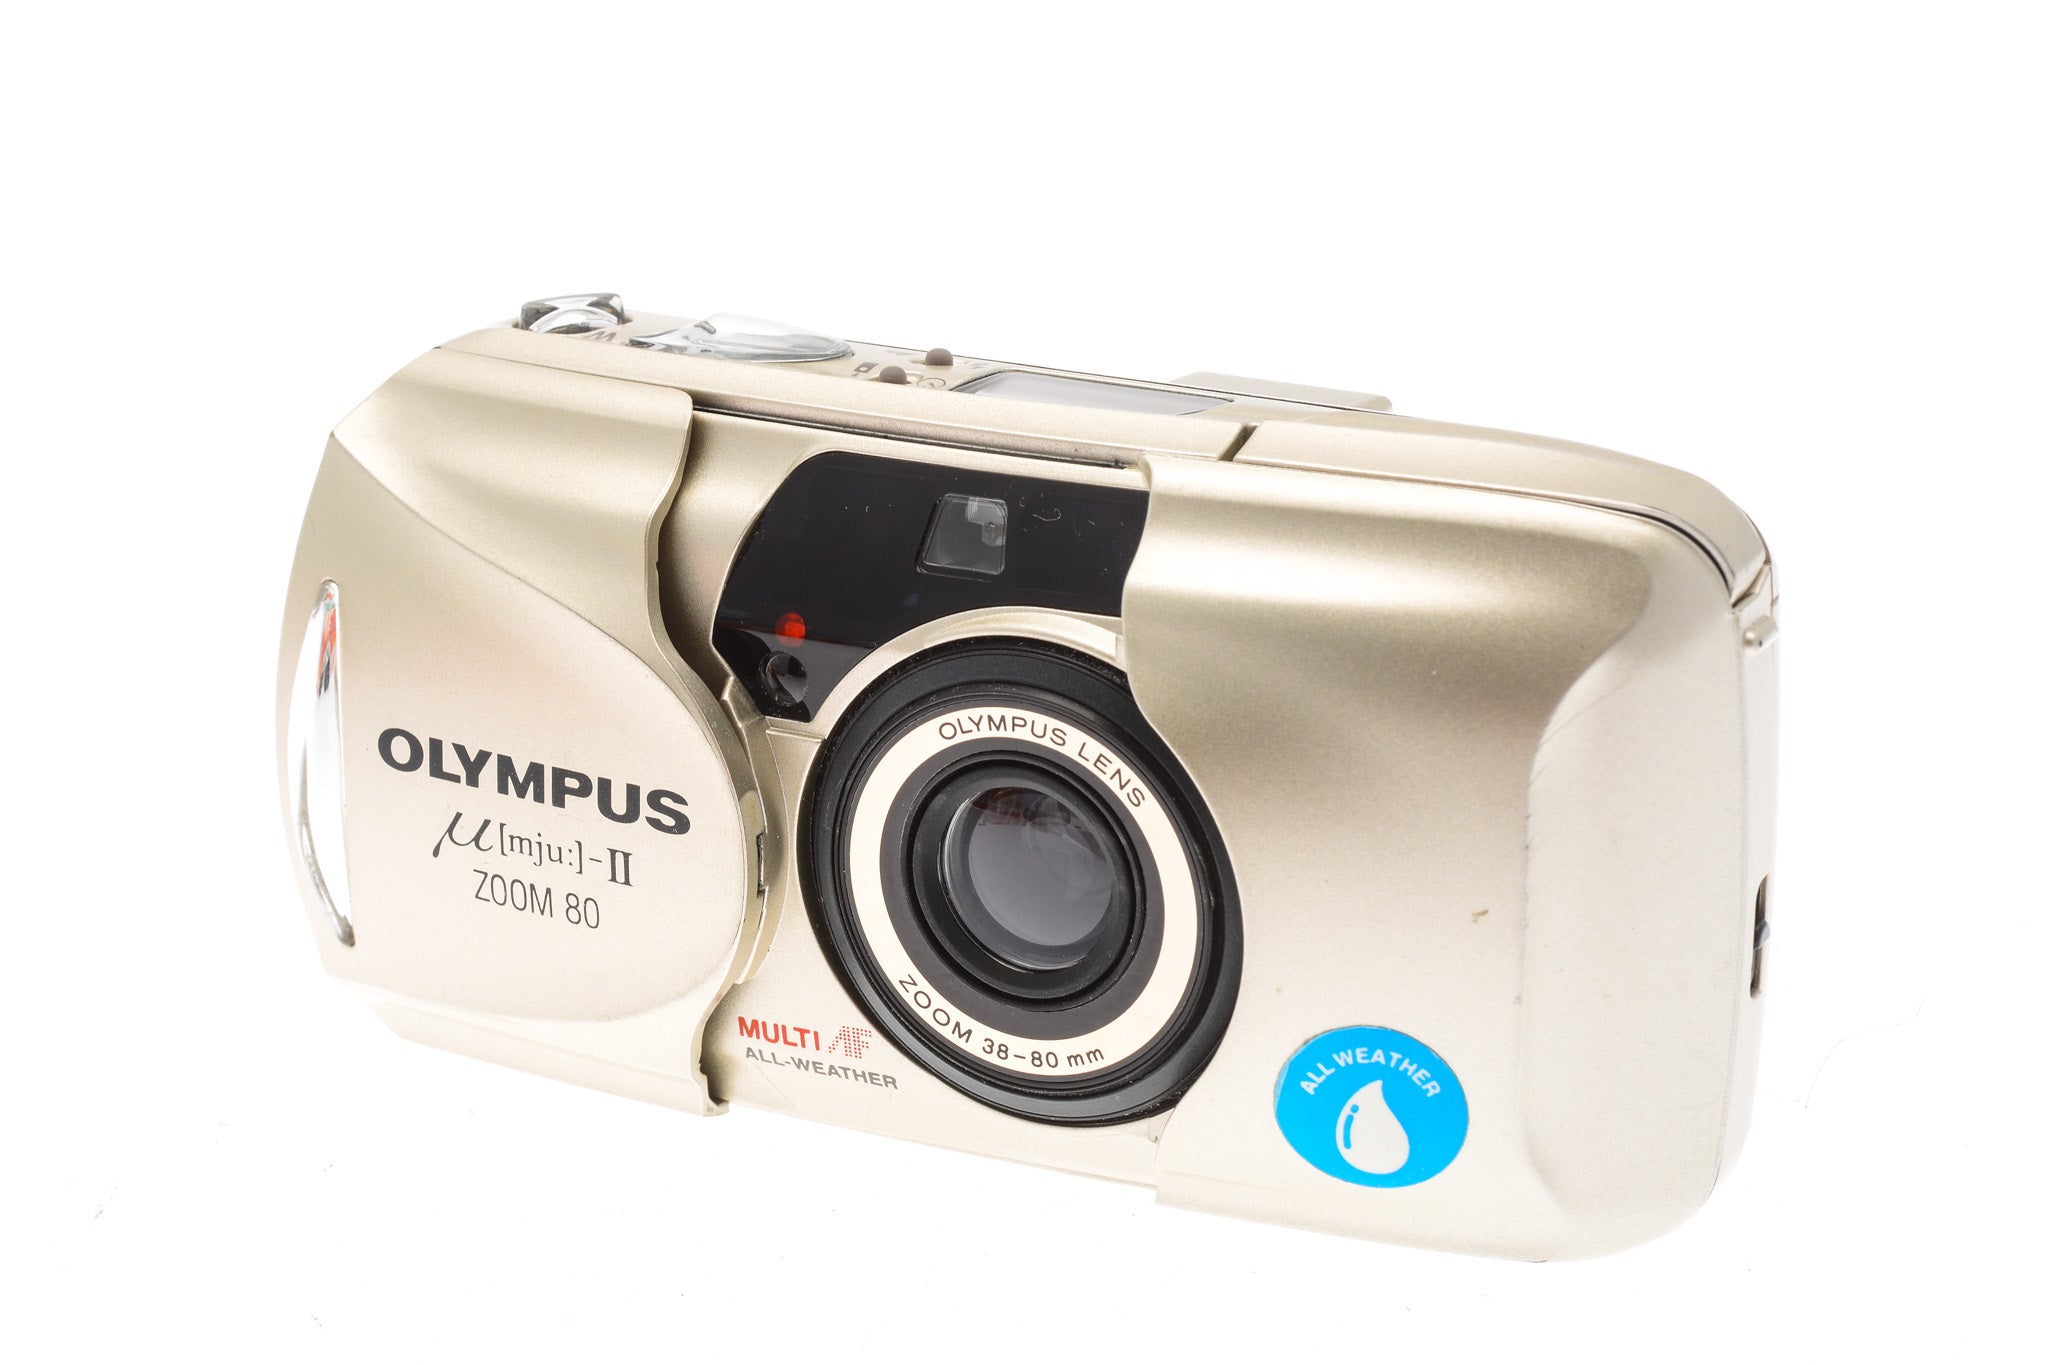 Olympus mju-II Zoom 80 Panorama - Camera